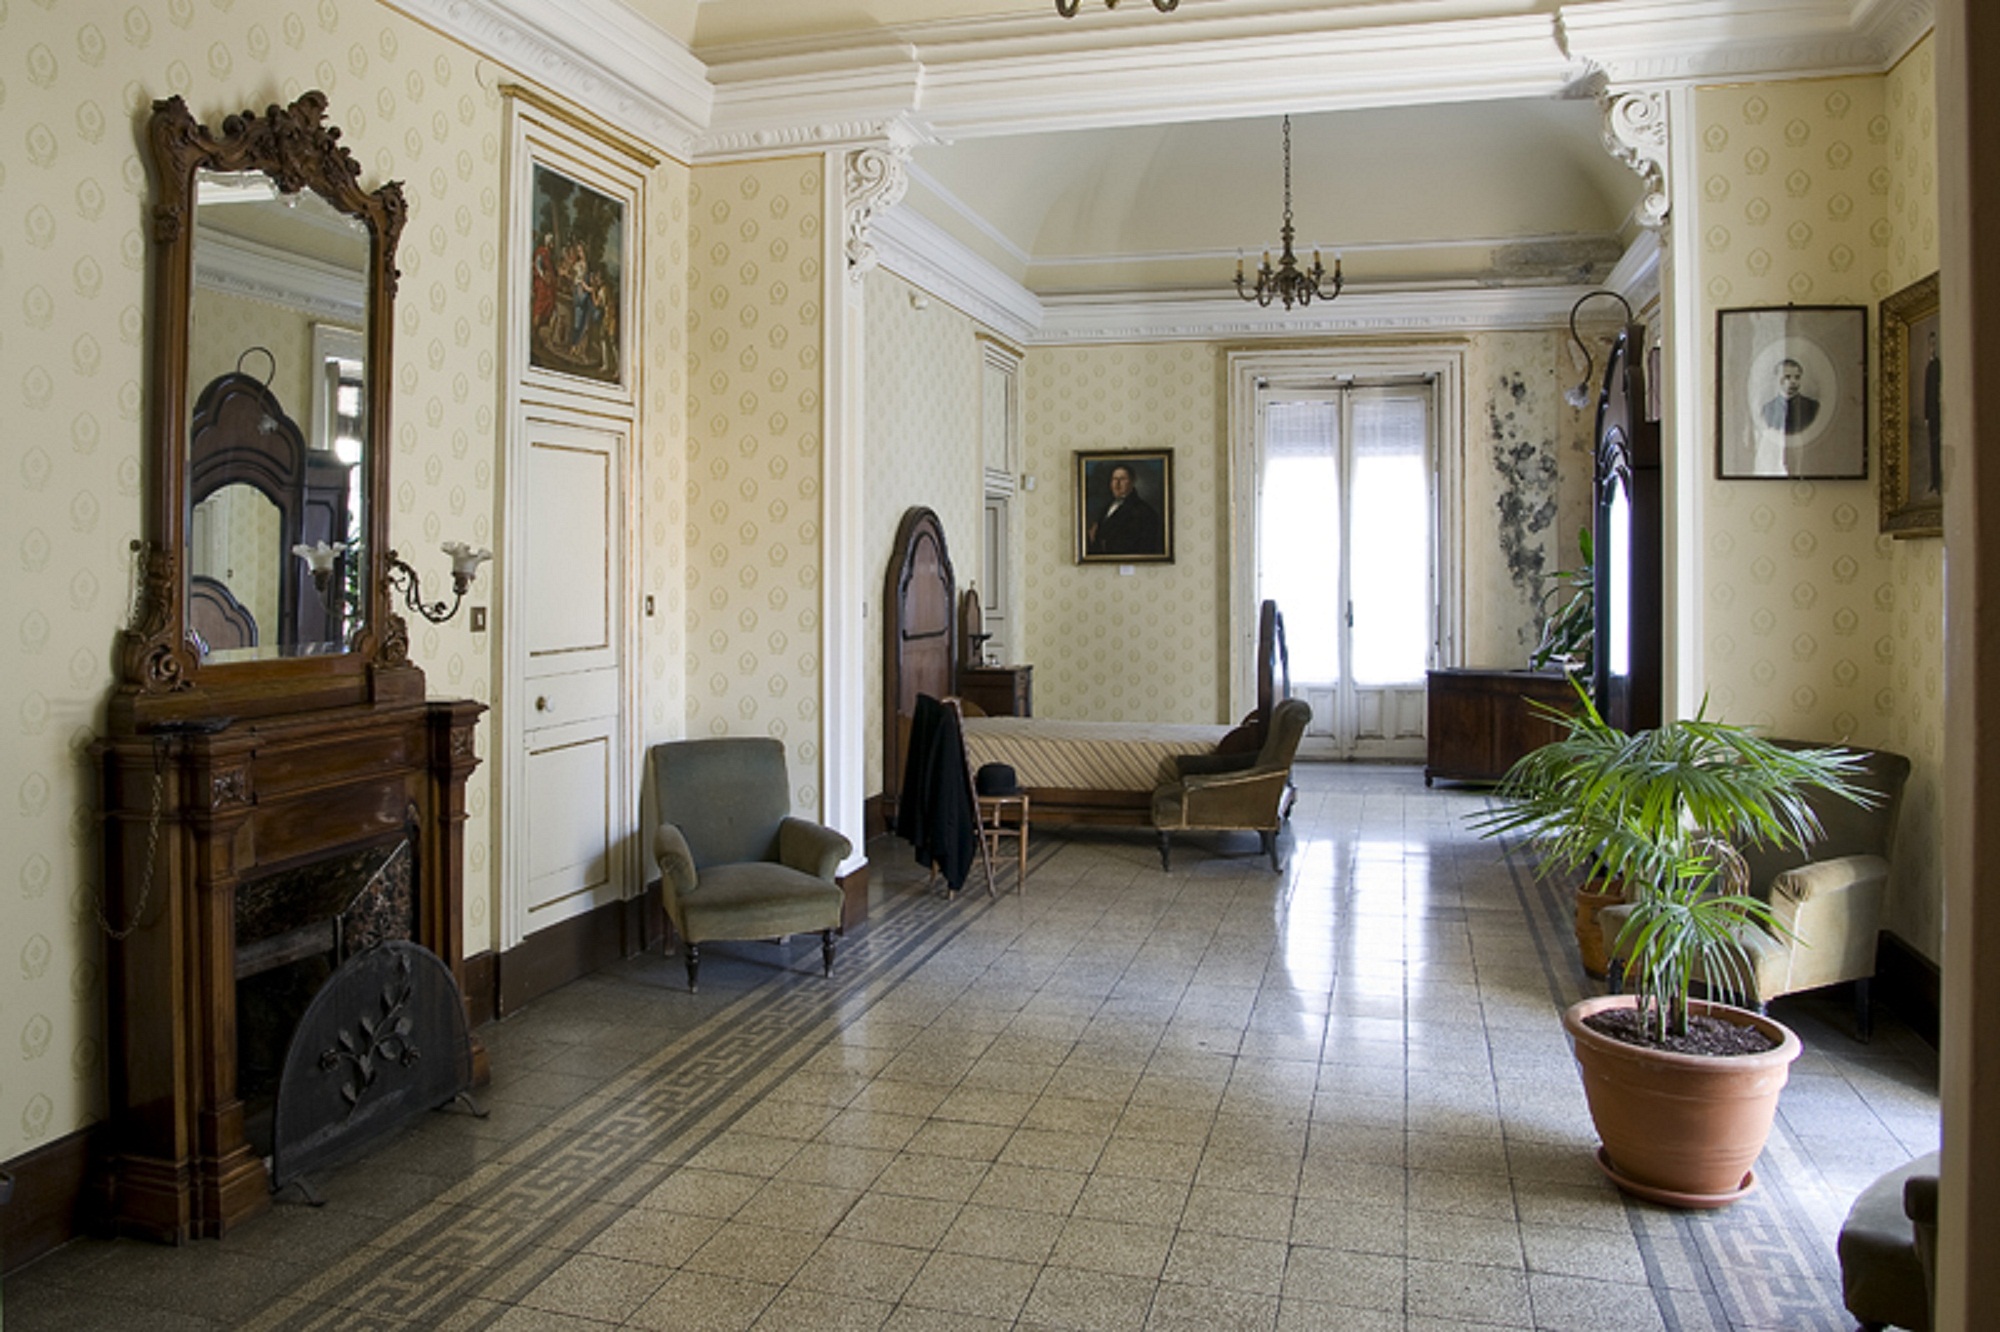 Casa museo Giovanni Verga (casa museo) - Catania (CT) 